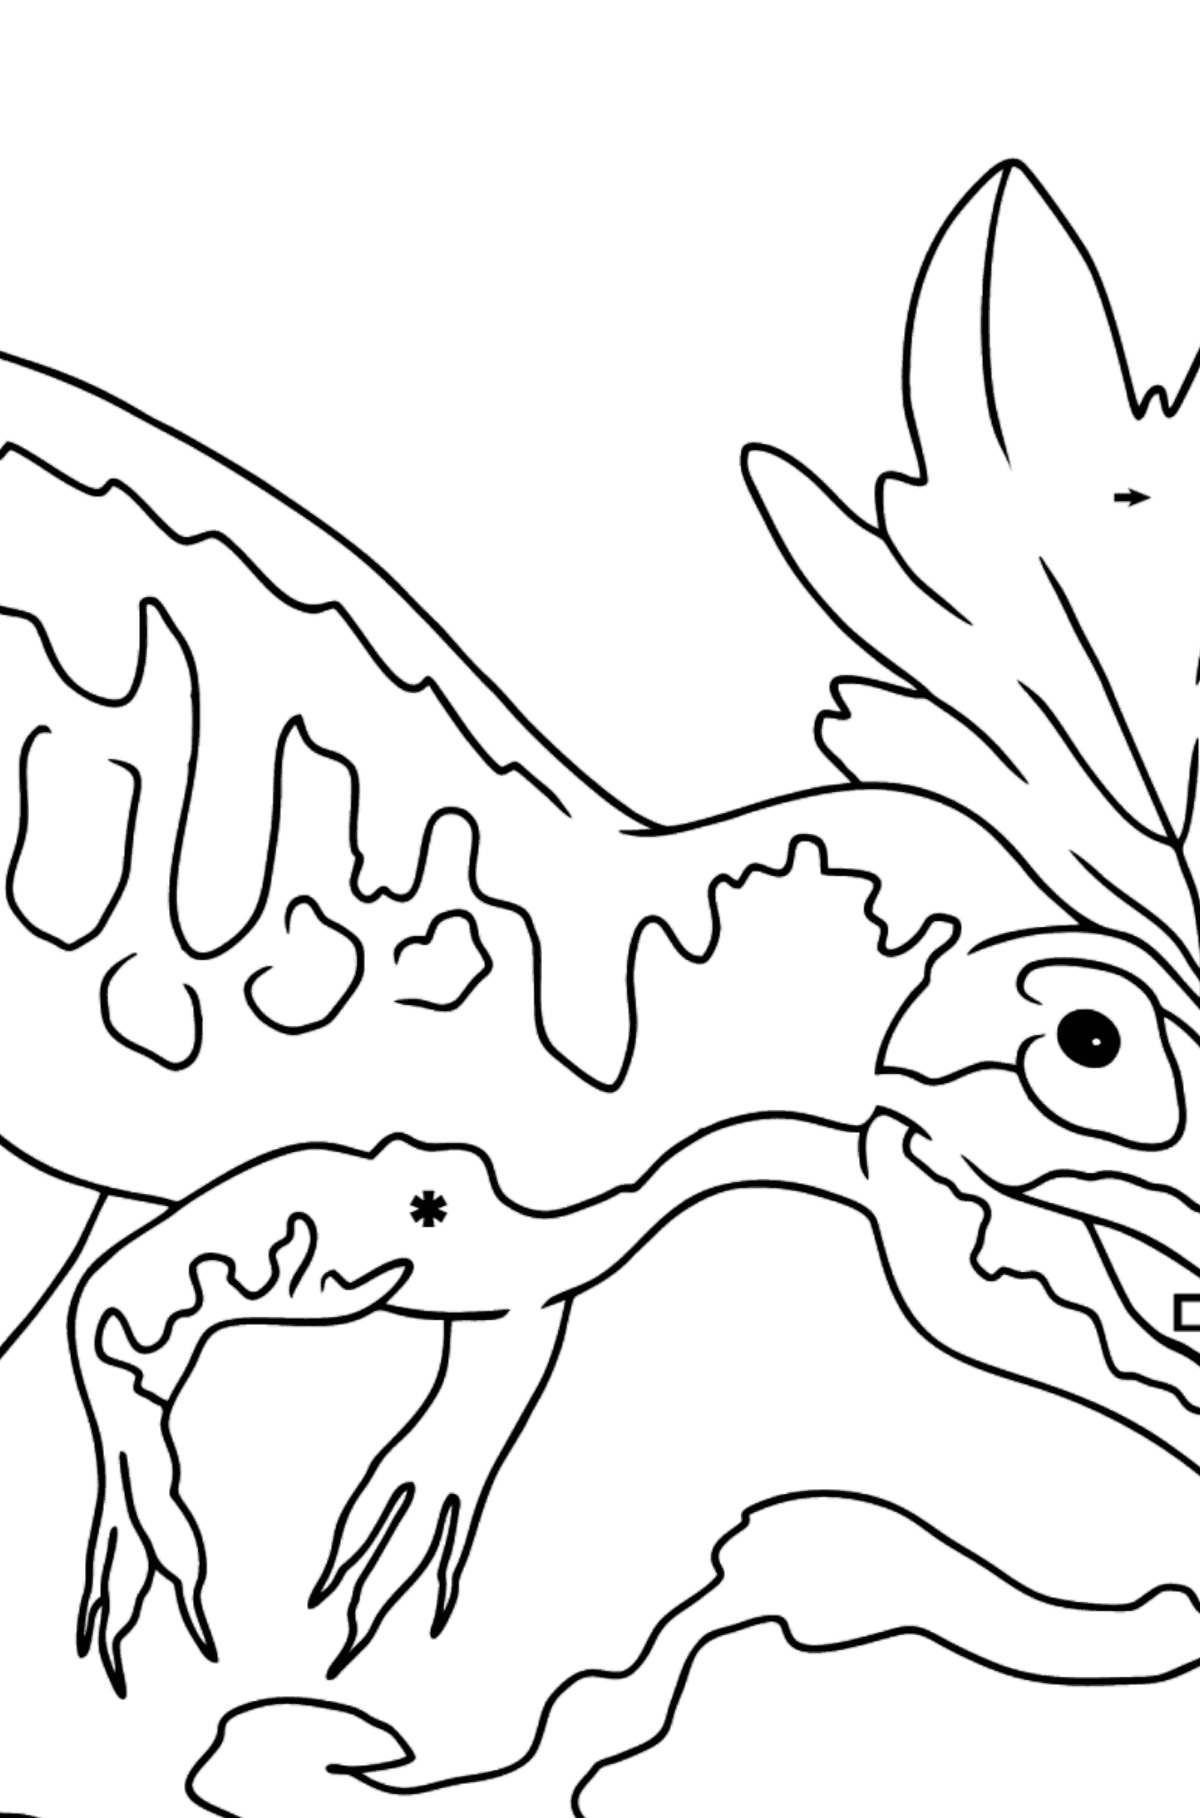 Dibujo para colorear de alosaurio (fácil) - Colorear por Símbolos para Niños